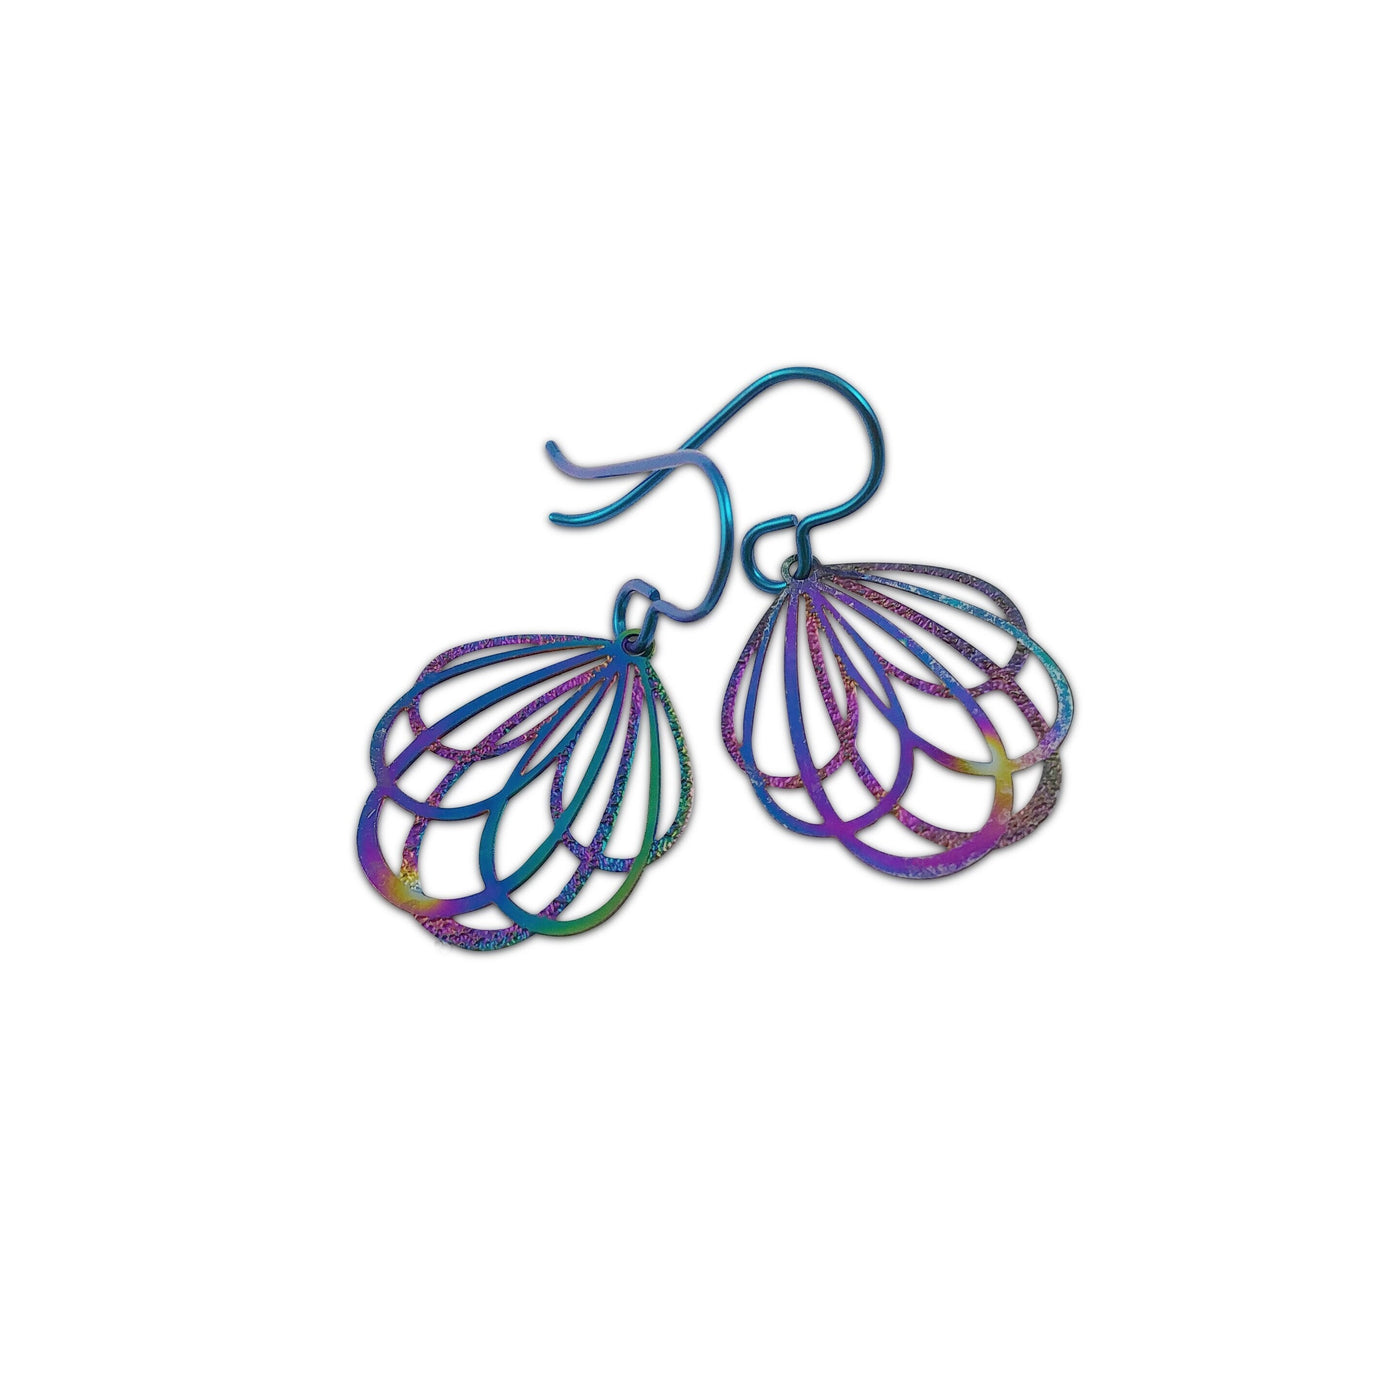 Flower niobium earrings, Rainbow filigree dangle earrings, Lightweight floral earrings, Women gardener gift idea